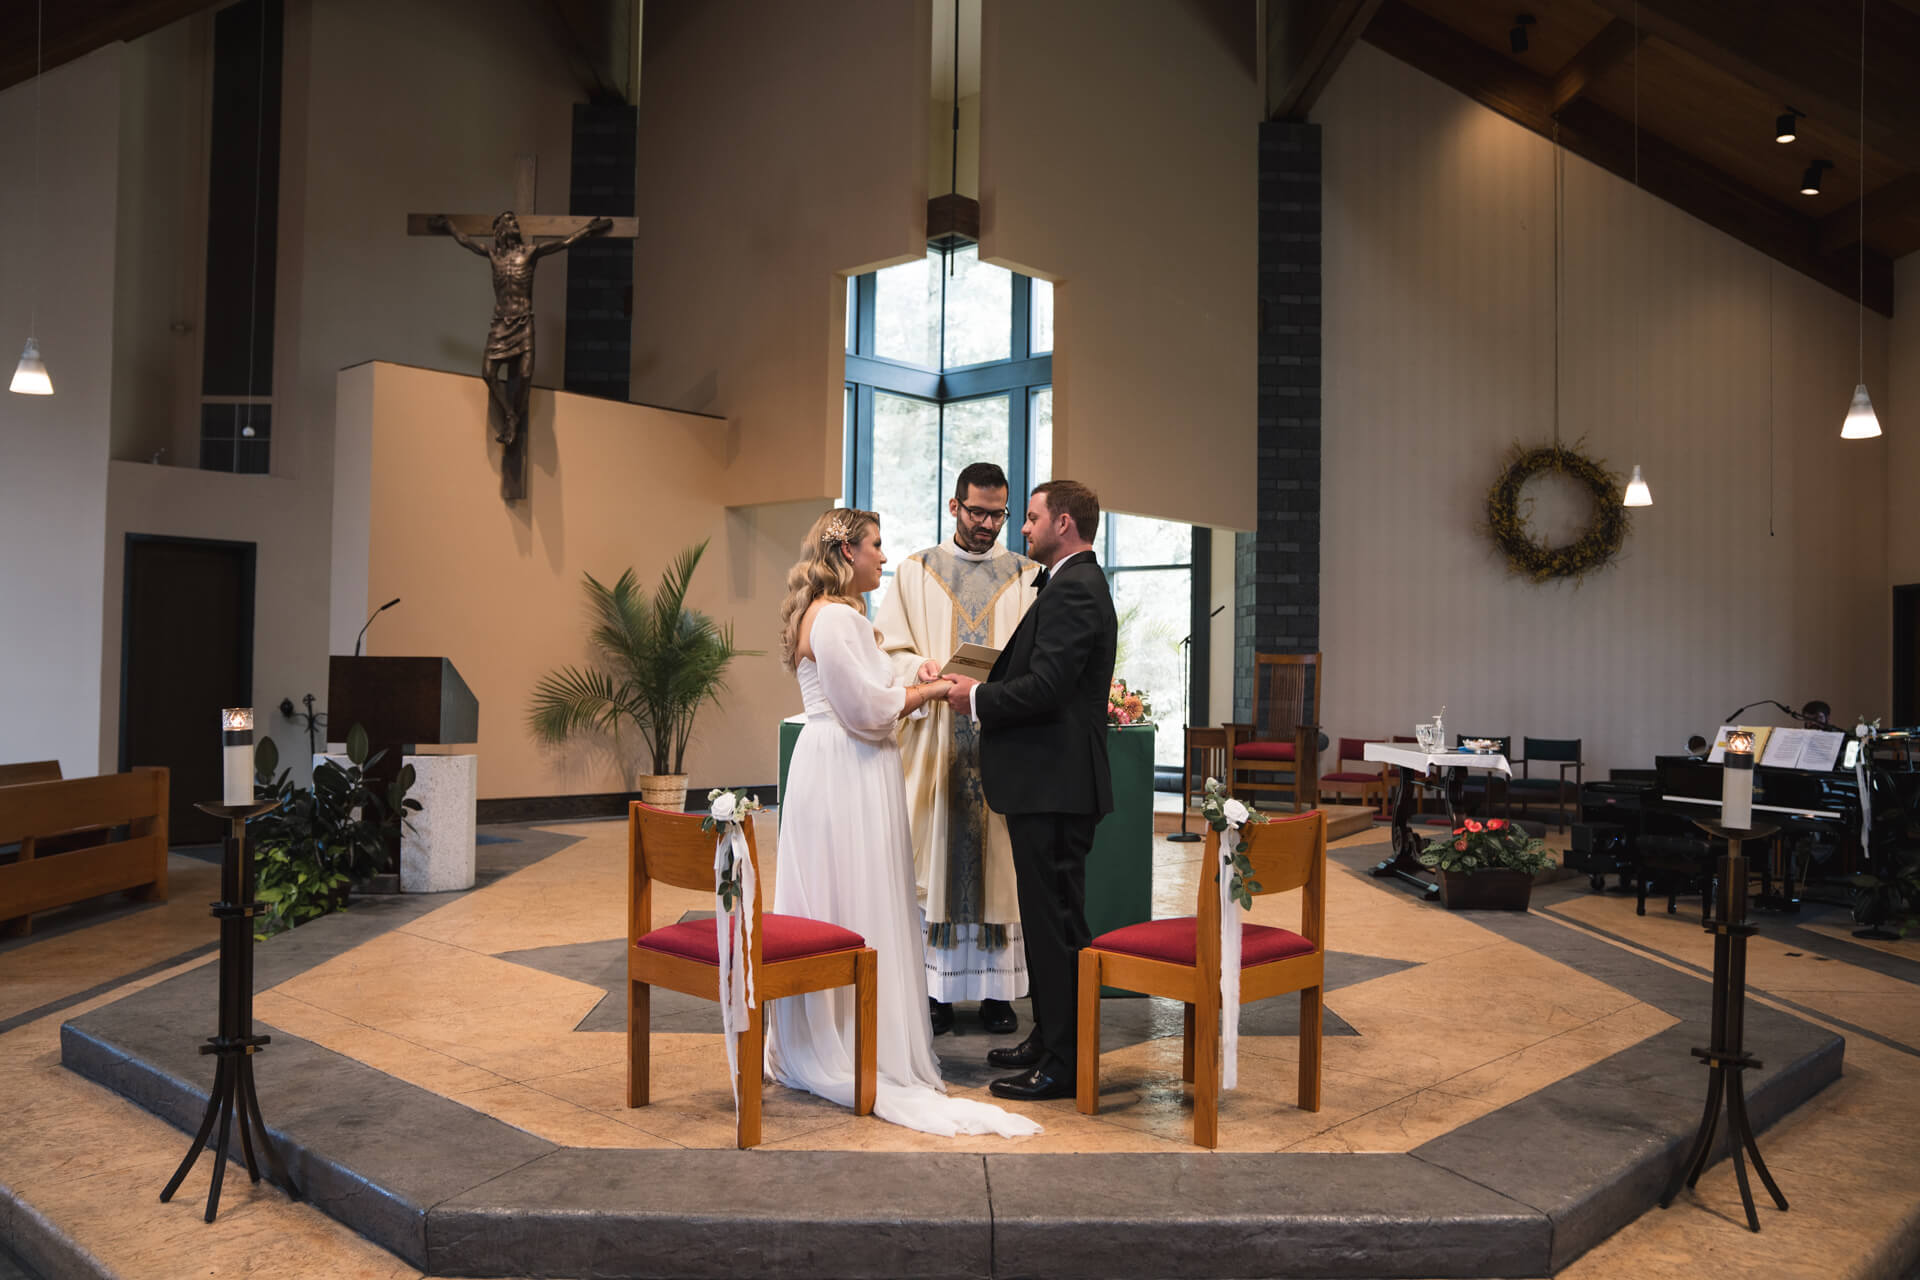 Der Ehesegen vom Pfarrer in einer amerikanischen Kirche in New Jersey.